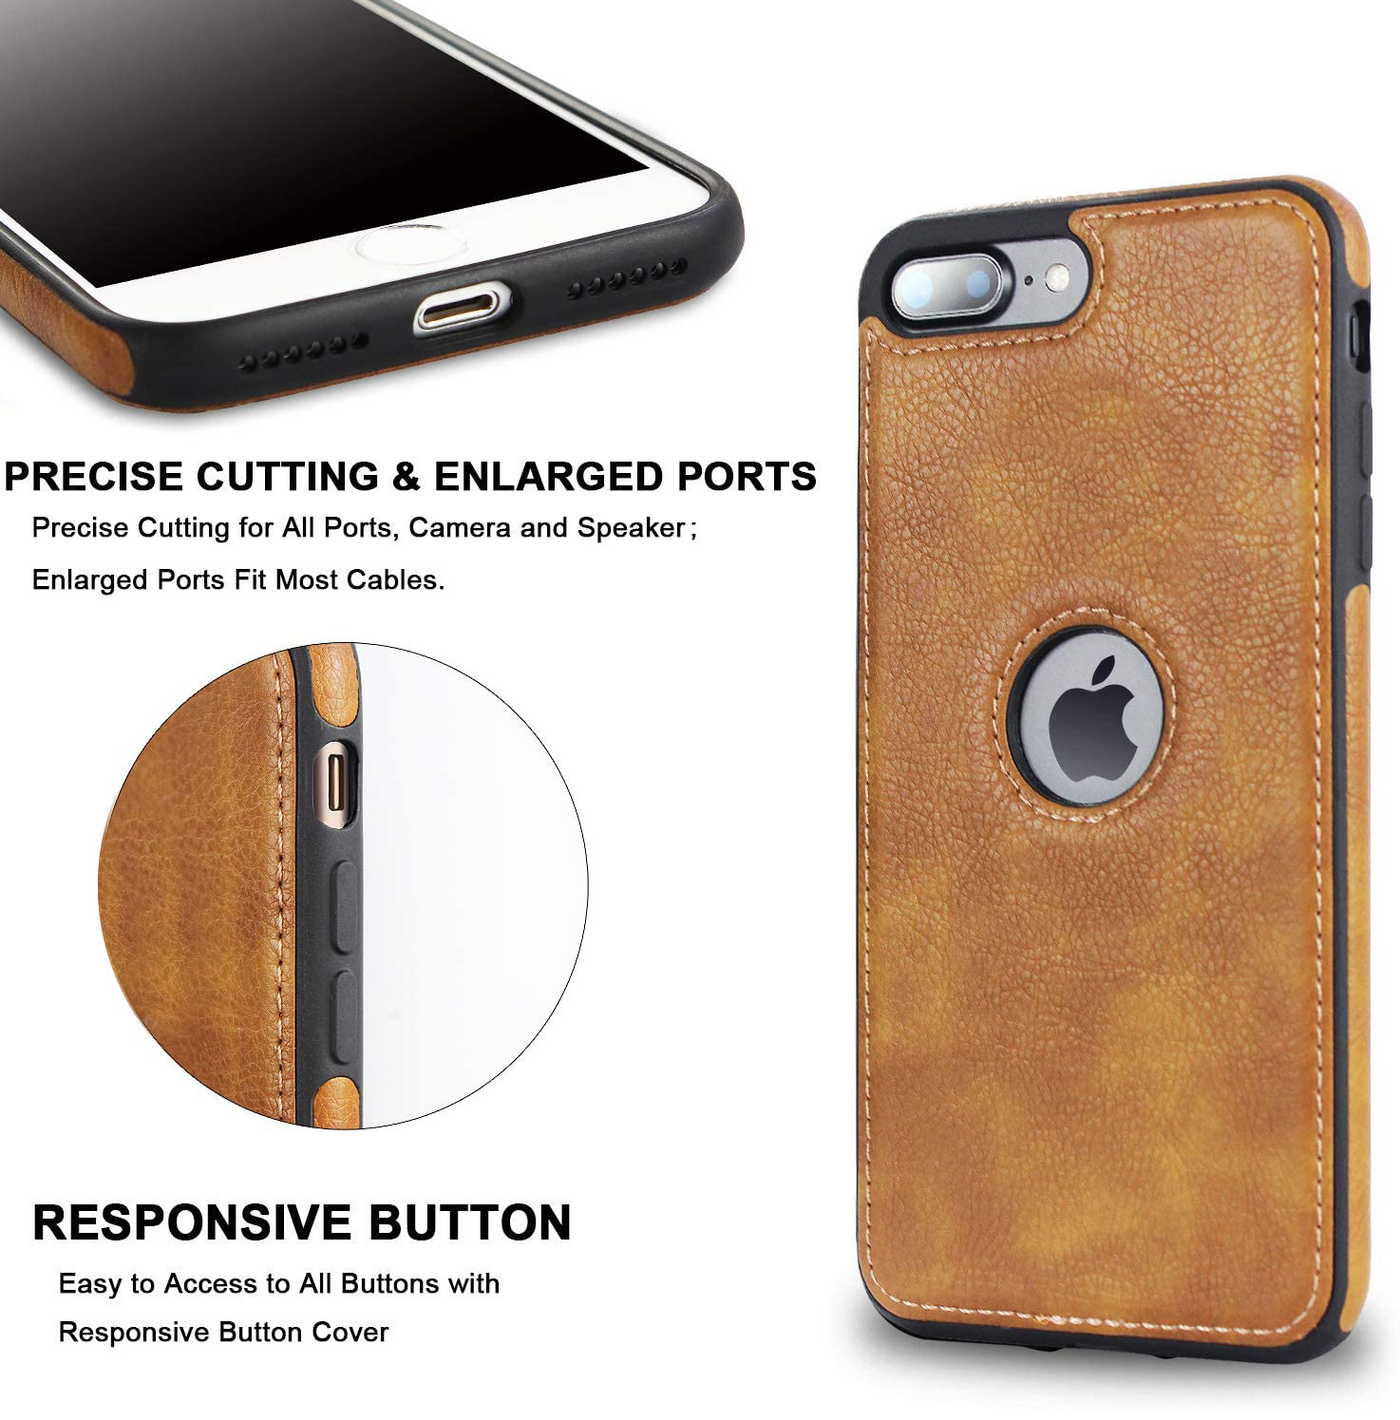 Apple iPhone SE 2020 high quality premium and unique designer leather case cover